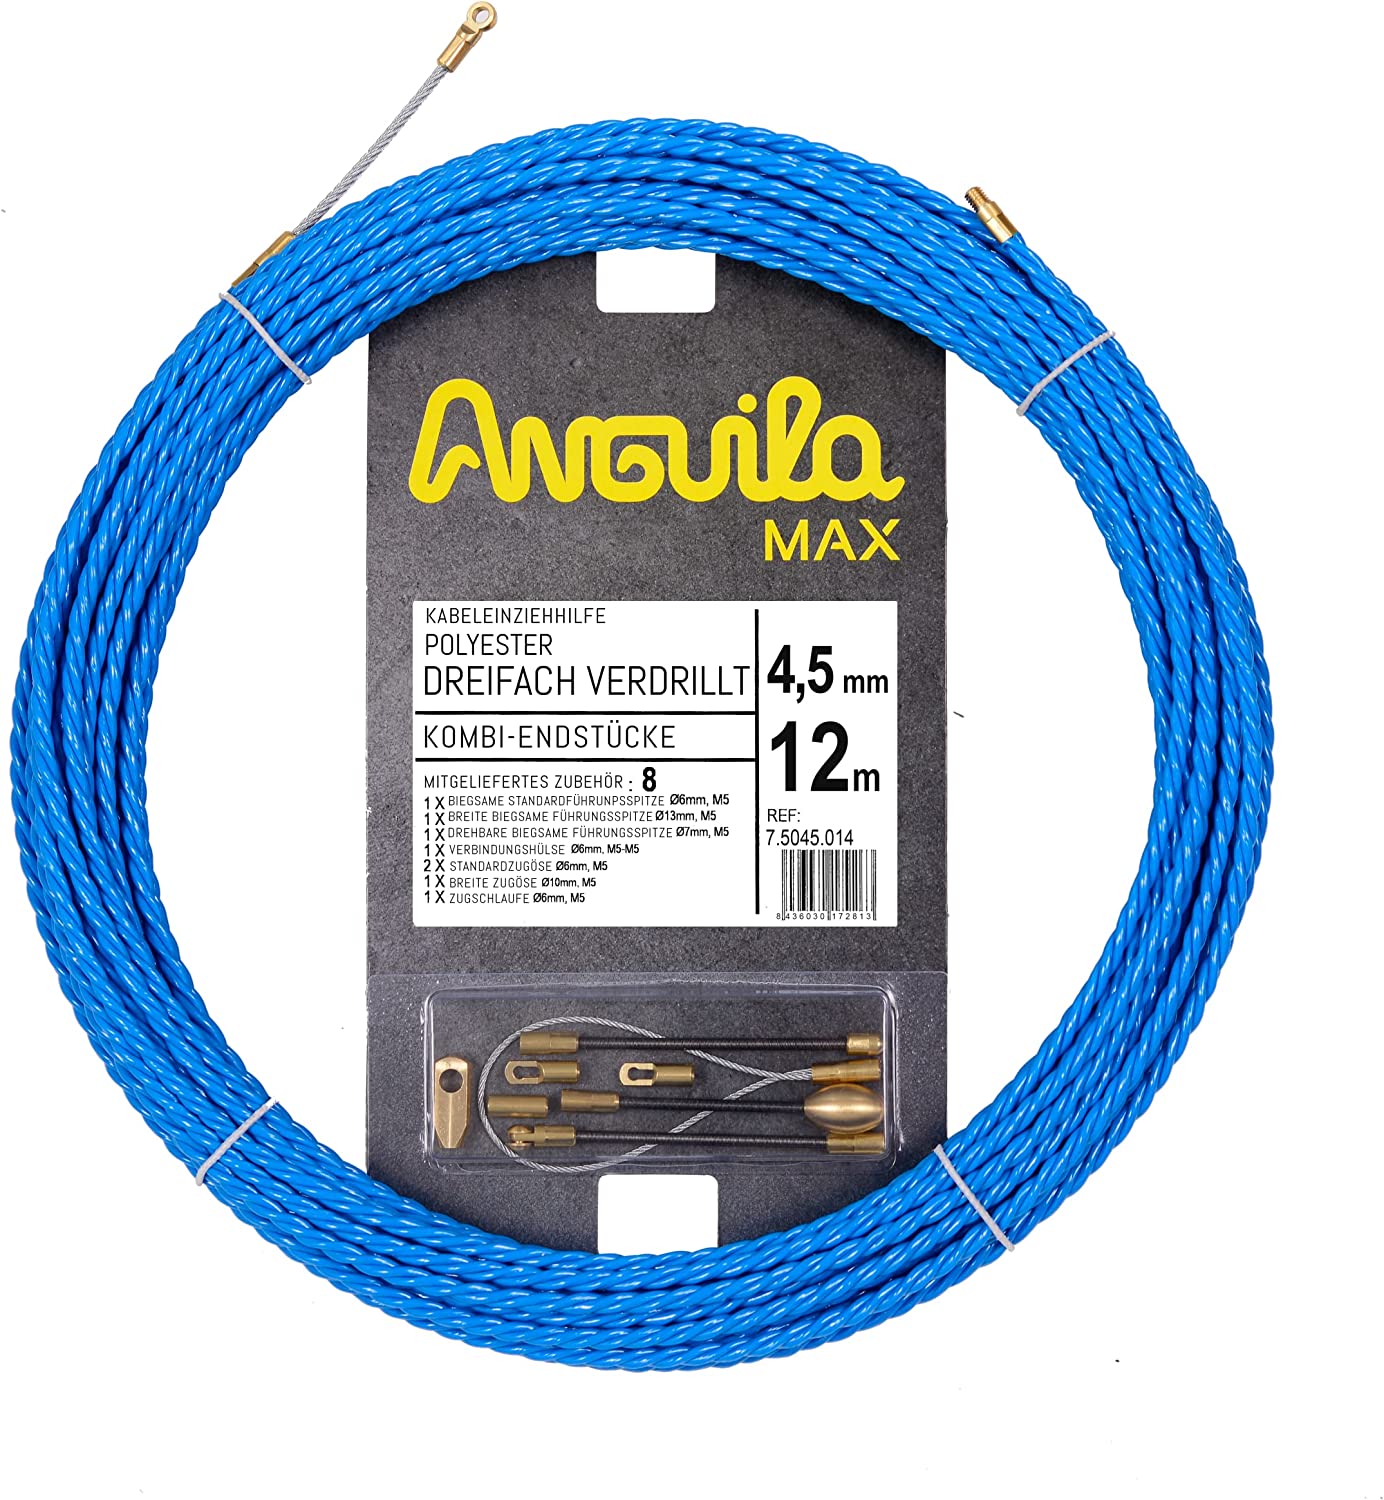 Anguila Max 7.5045.012 Guía pasacables Especial Curvas Poliéster Triple Trenzada 4,5mm 12 Metros y terminales Mixtos, Azul